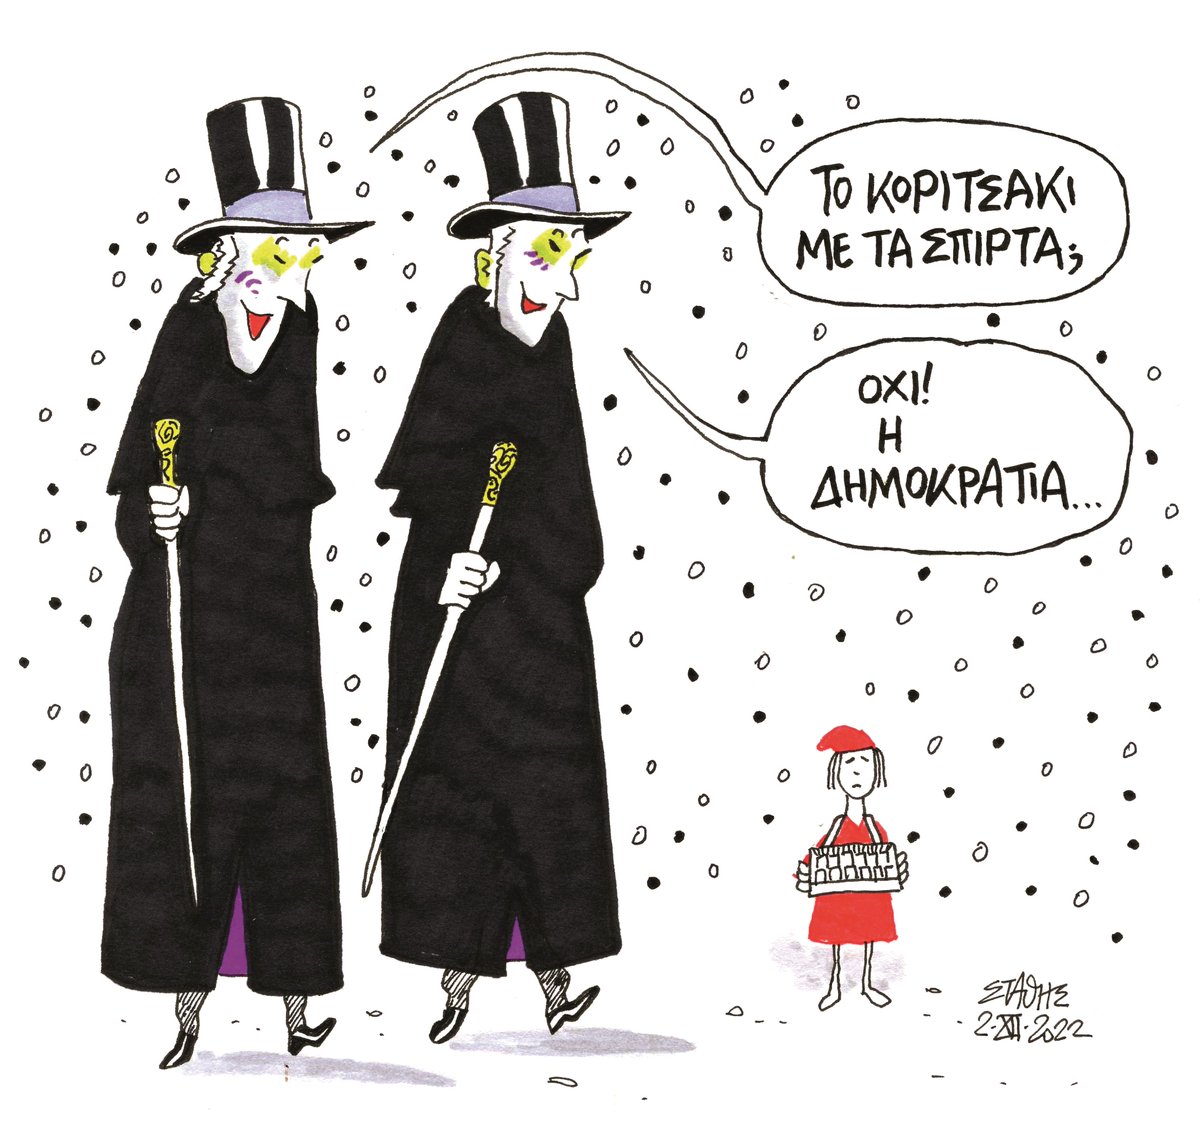 RT edromos 'Σκίτσο του Στάθη (@st_stavropoulos) για το πρωτοσέλιδο του Δρόμου του Σαββάτου 3 Δεκεμβρίου '